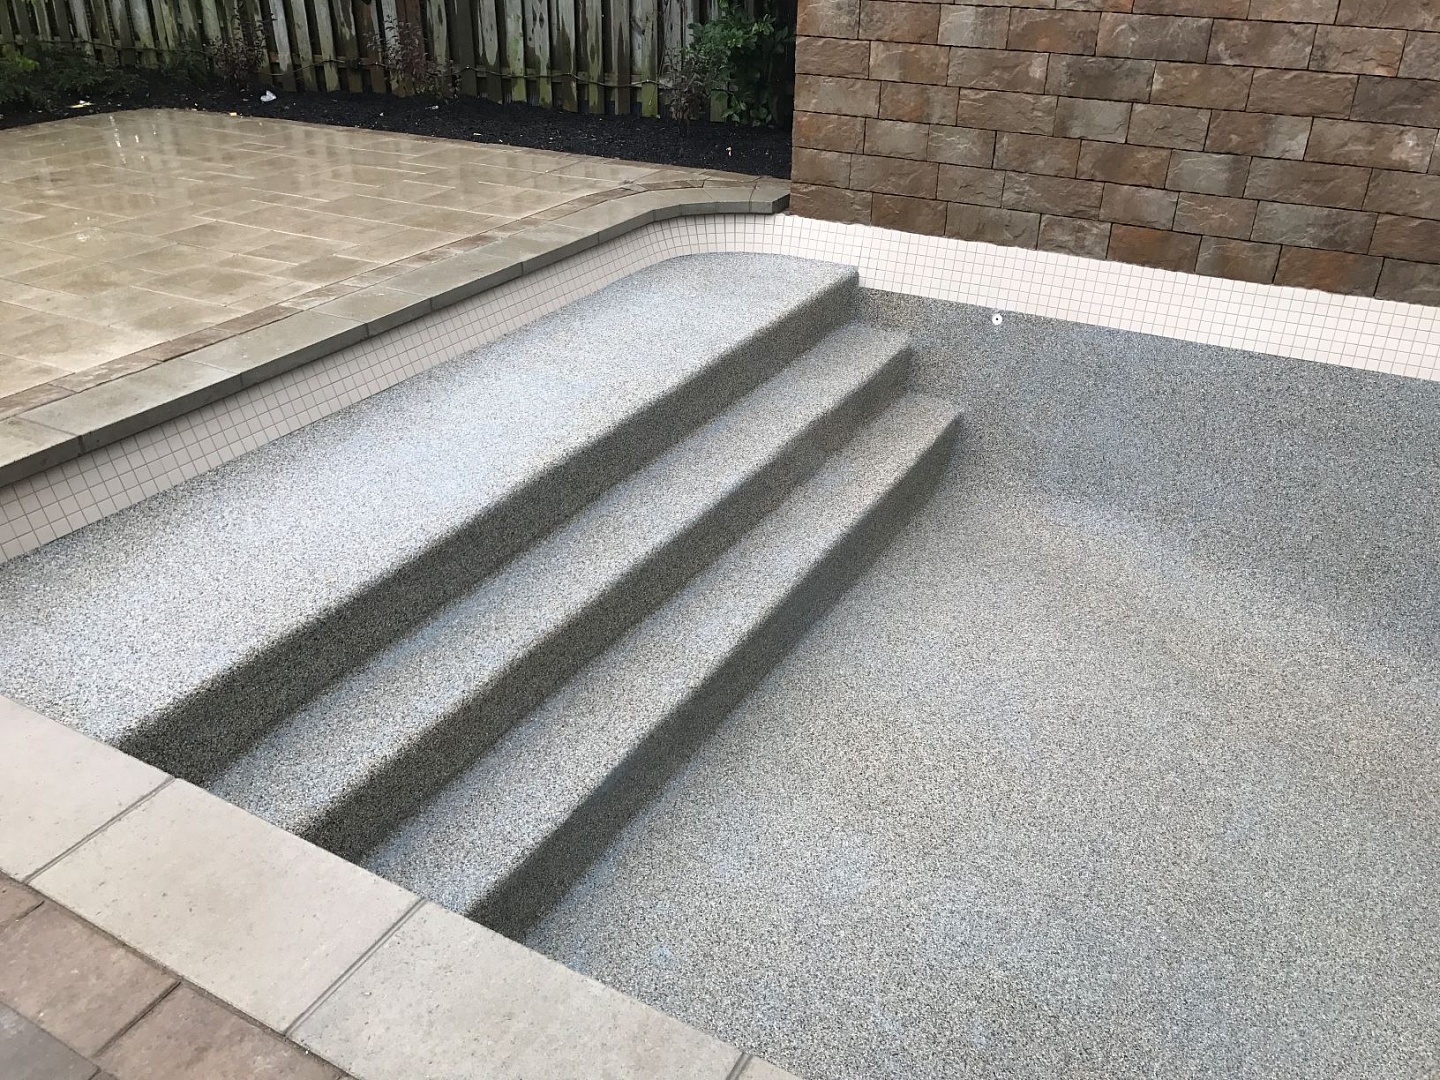 Vinyl lined pool steps installed in inground pool by Seaway